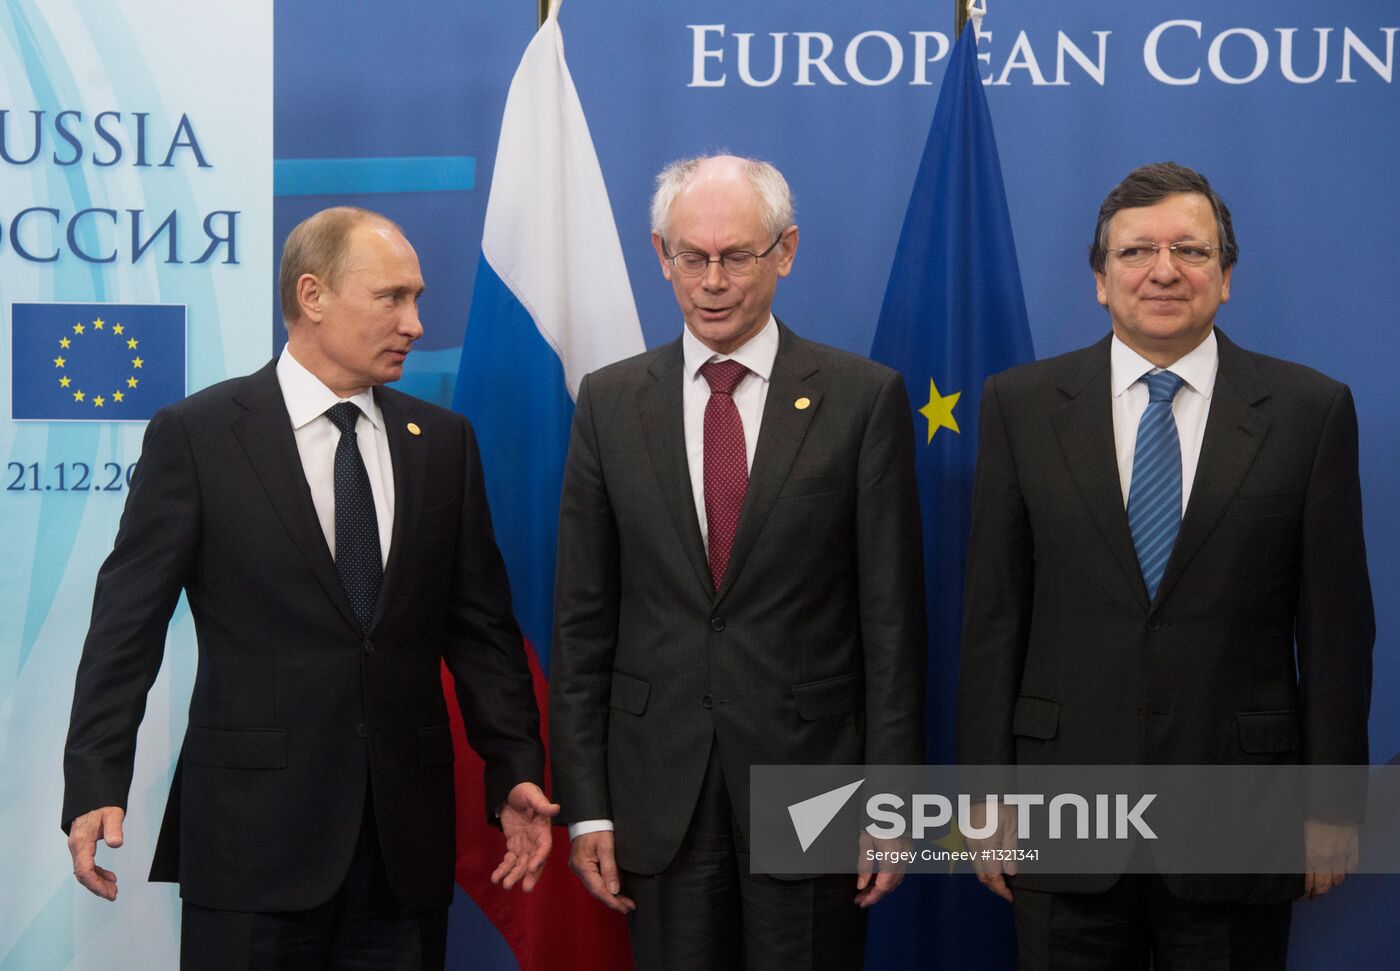 V.Putin at Russia-EU summit in Brussels